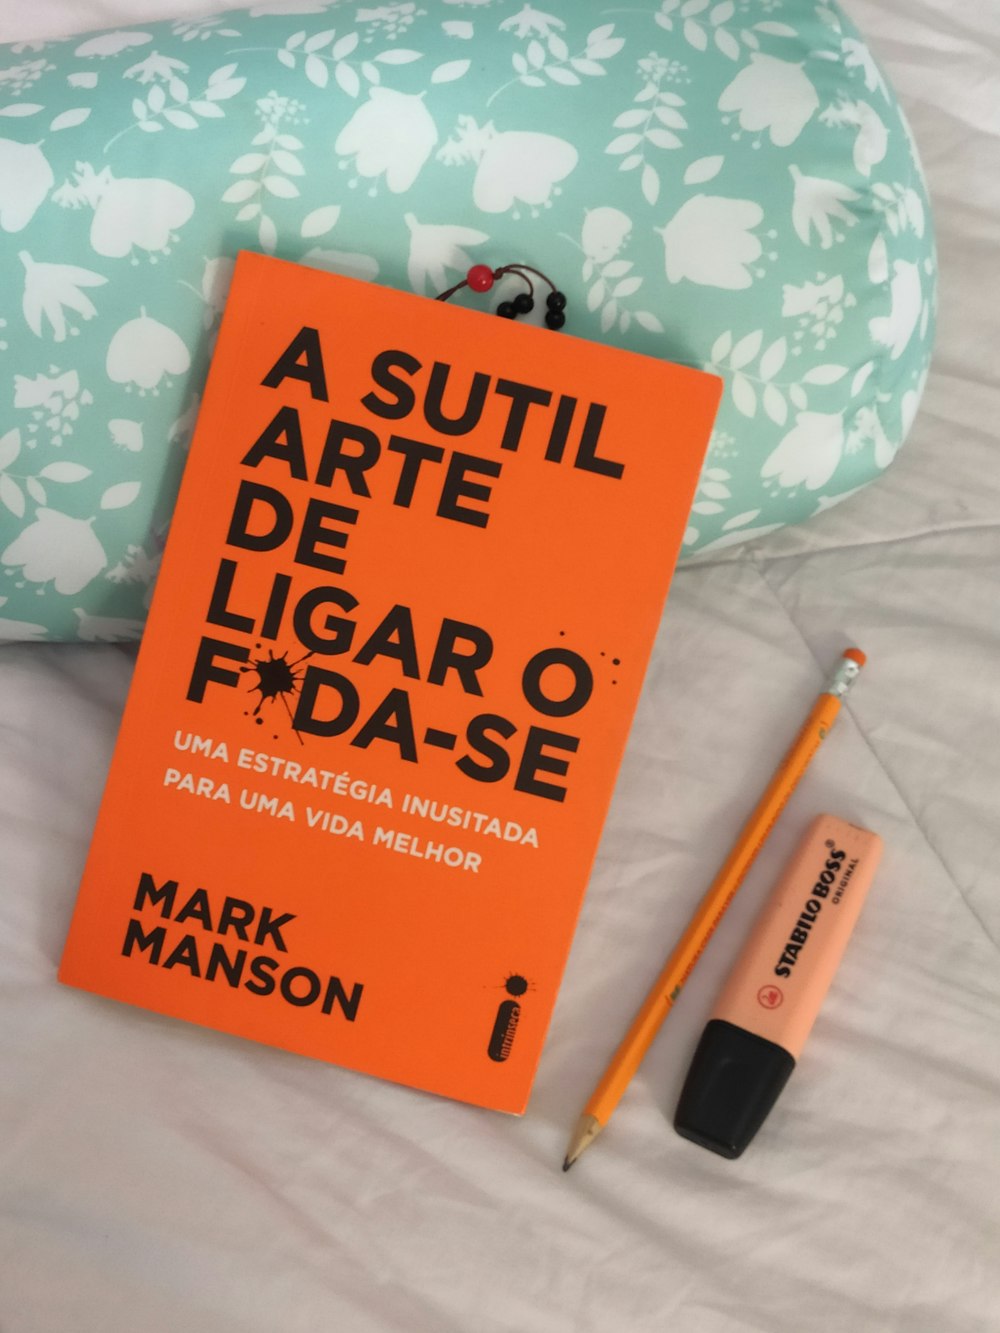 Ein orangefarbenes Buch sitzt auf einem Bett neben einem Stift